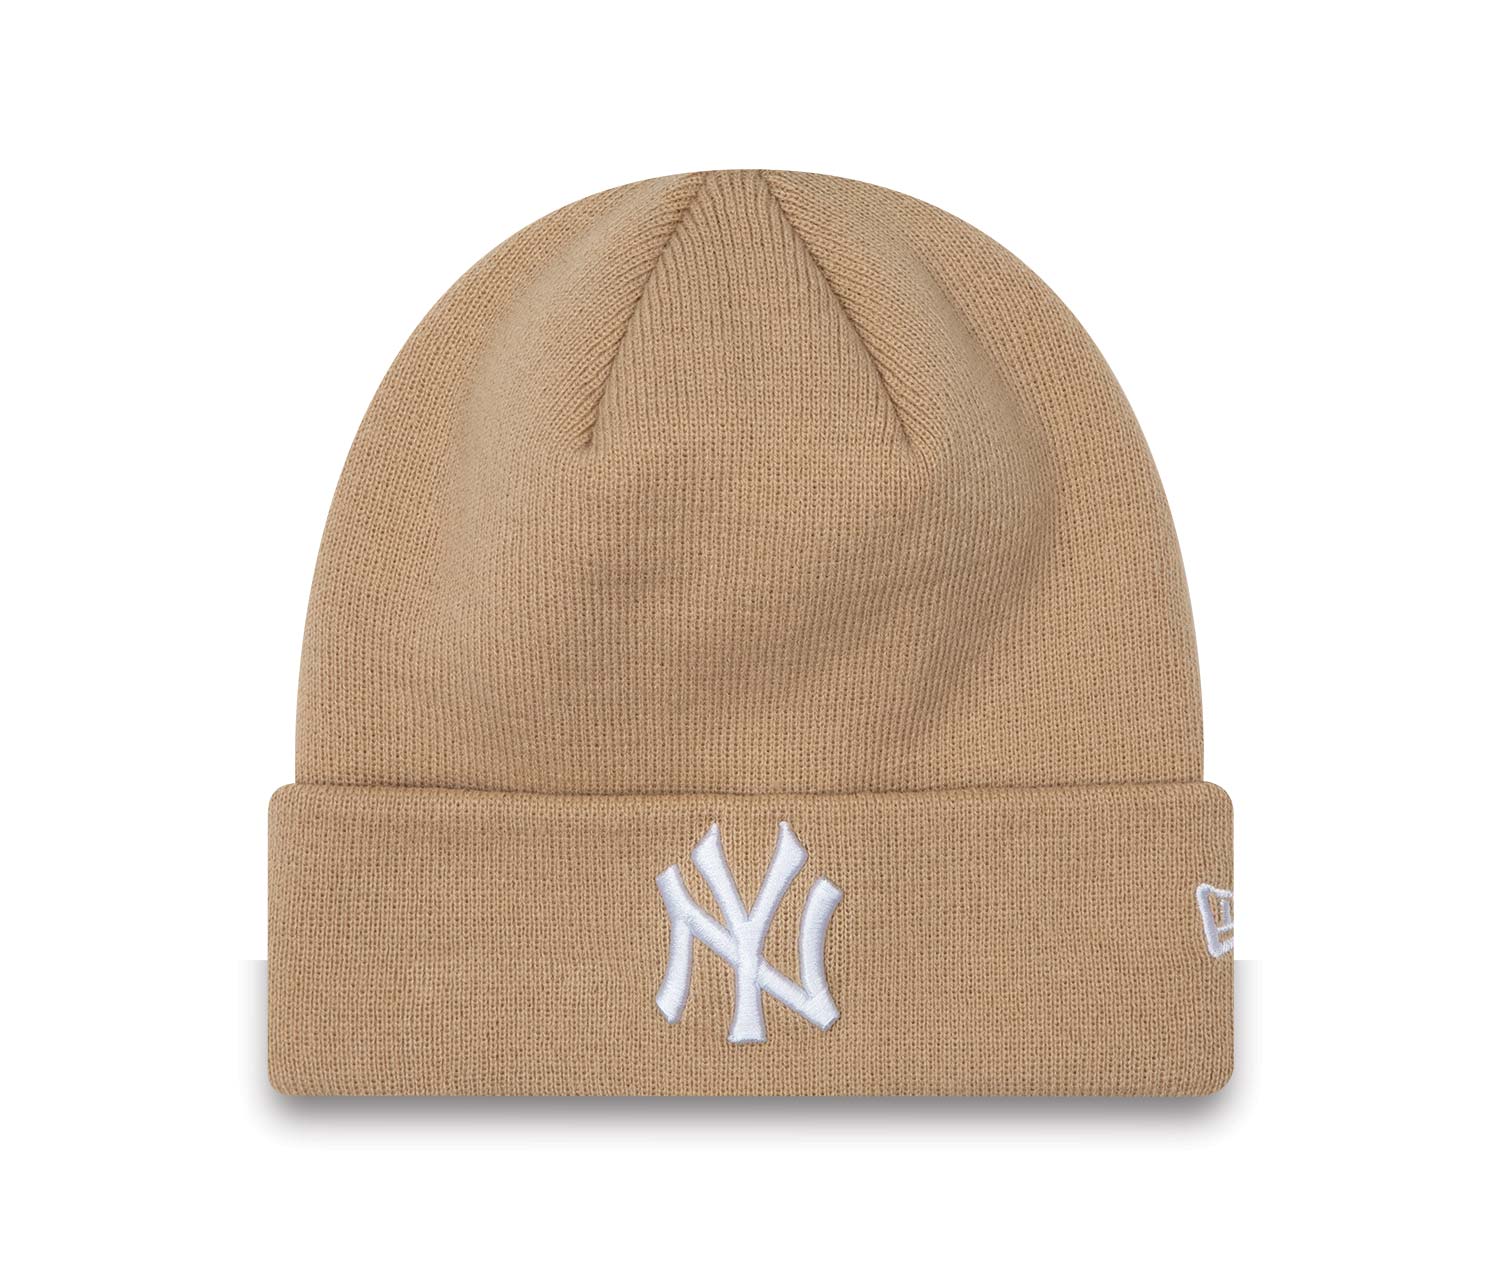 New York Yankees League Essentials Cuff Beige Beanie Hat